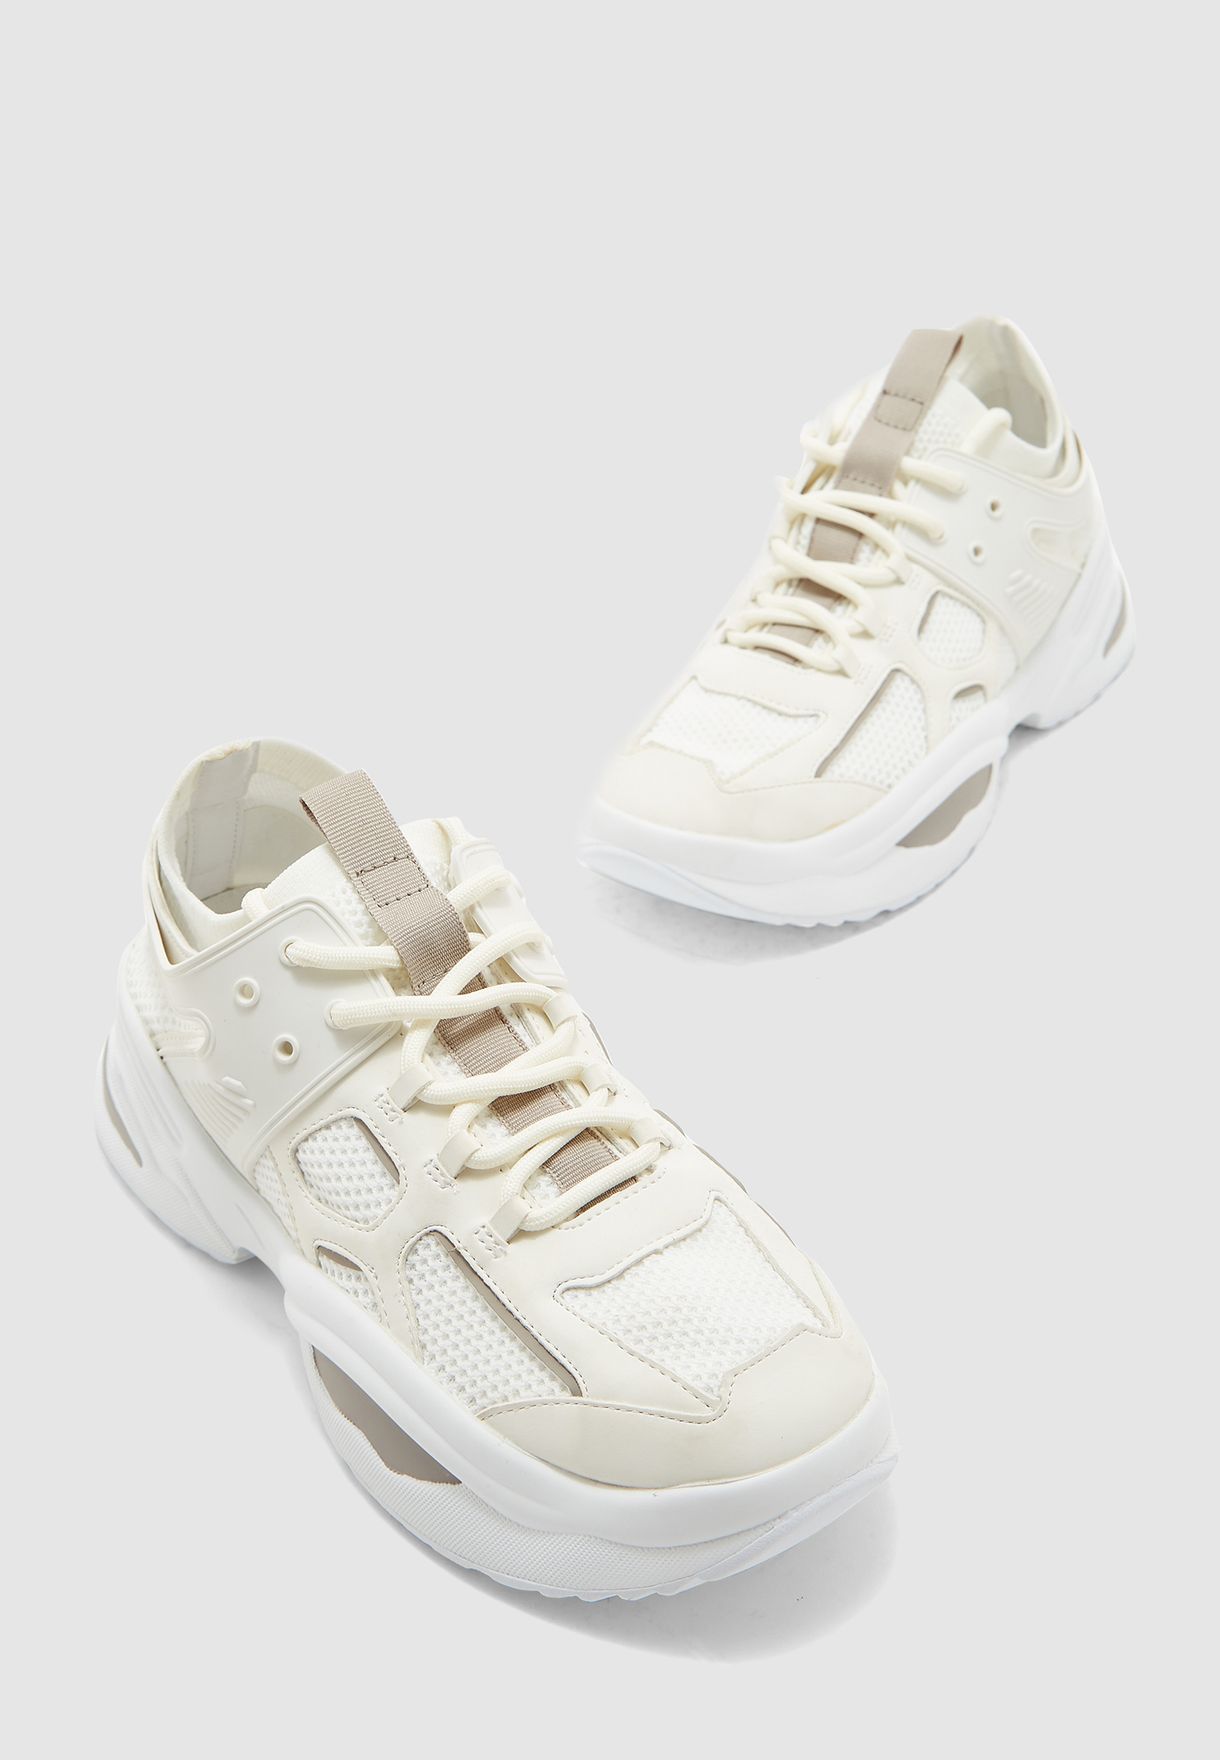 steve madden white sneakers